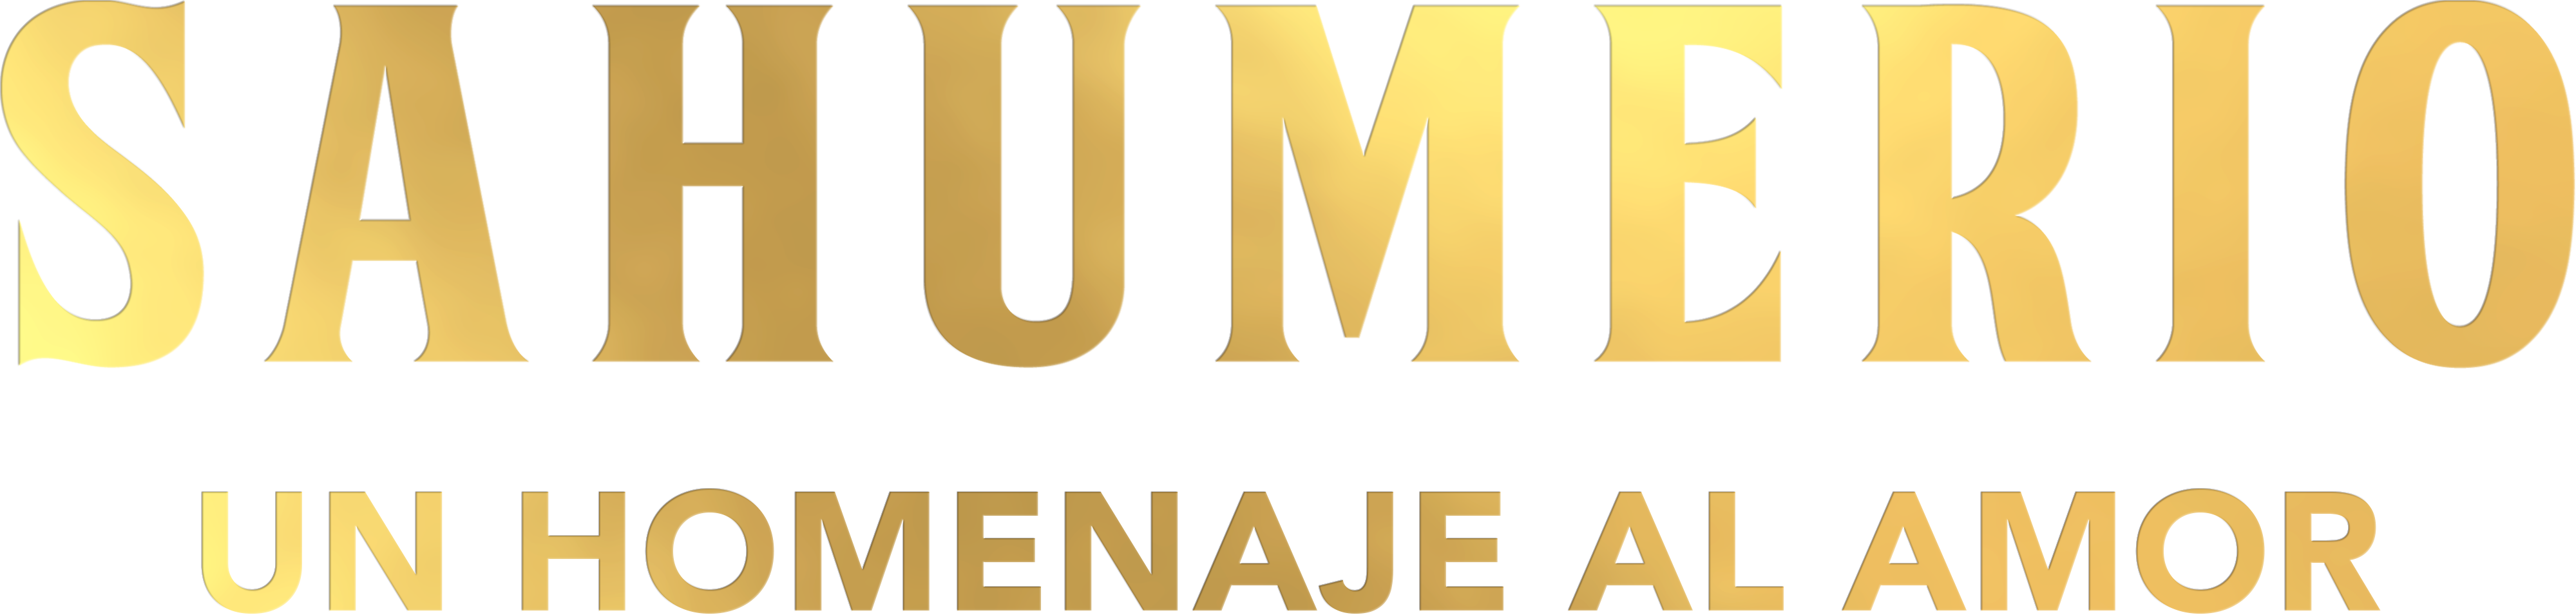 Sahumerio Logo